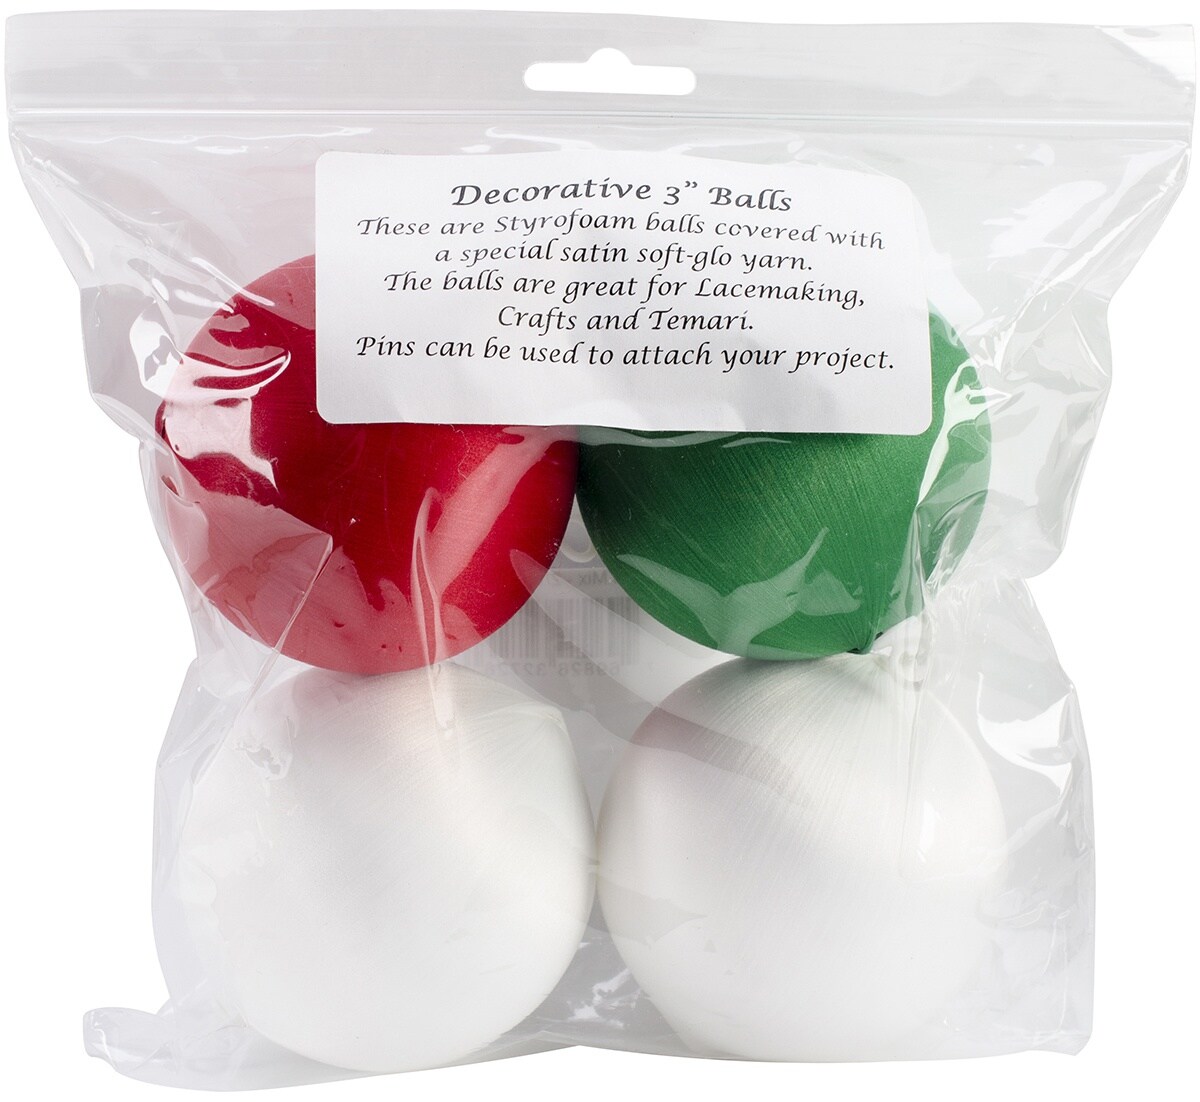 Handy Hands Decor Satin Covered Styrofoam Balls 3 4-pkg-2 White, 1 Red & 1 Green